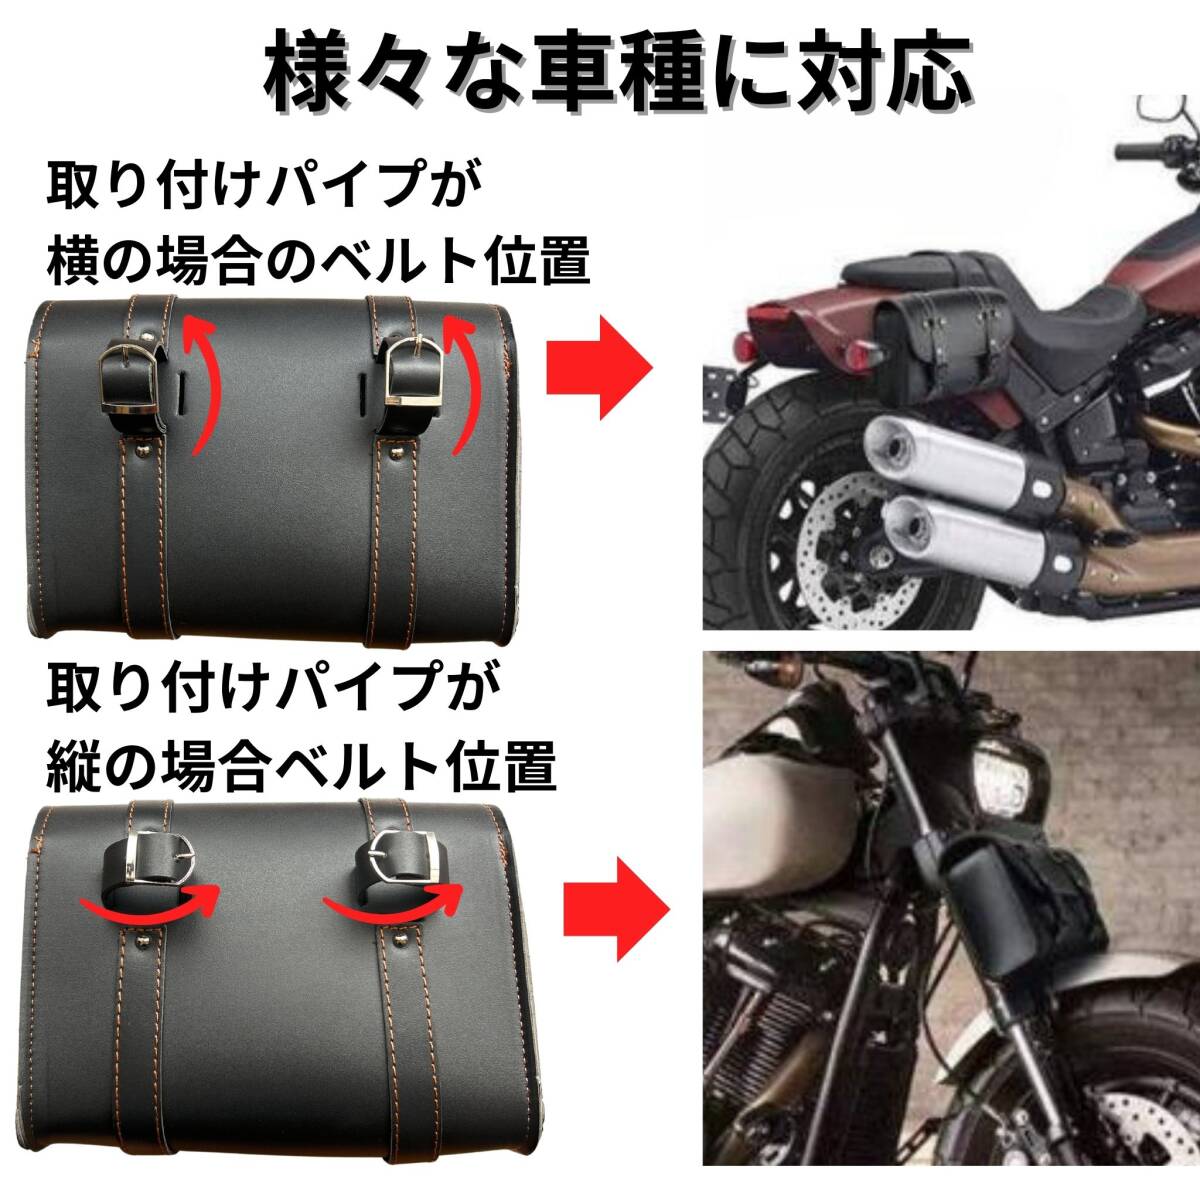 送料無料 バイク サイドバック 防水 レトロ サイドボックス バイクバック PUレザー 汎用 取付ベルト2本付きの画像3